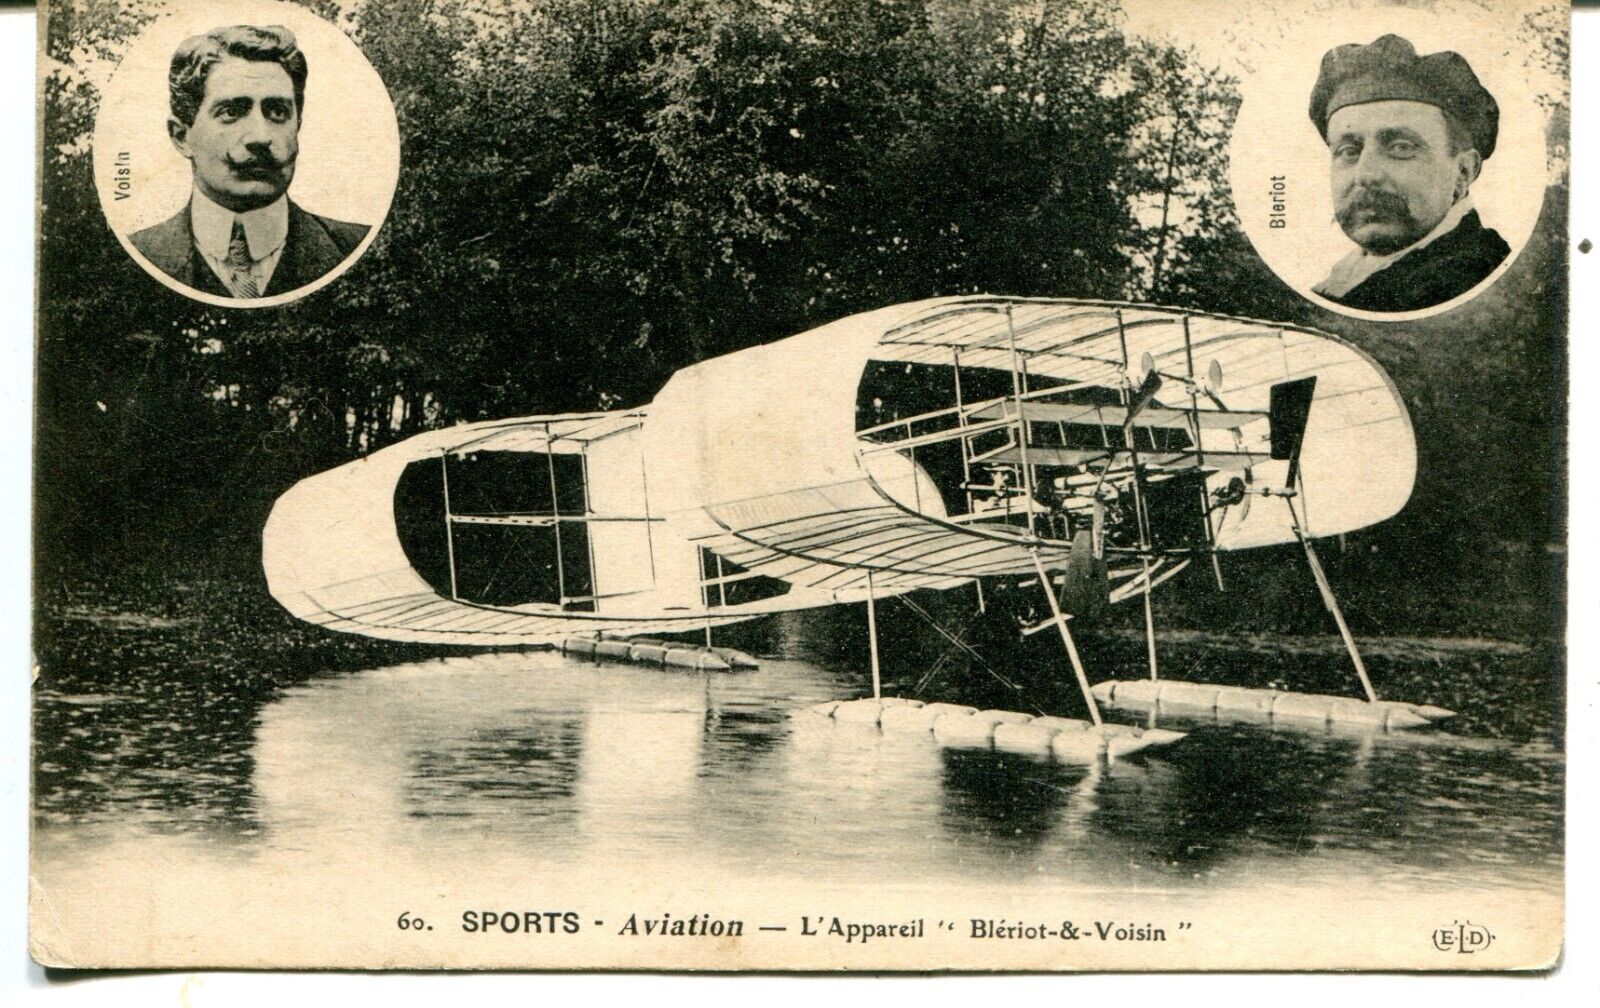 France Sports Aviation Hydro Plane L\'appereil Bleriot Voisin Portraits E. L. D.